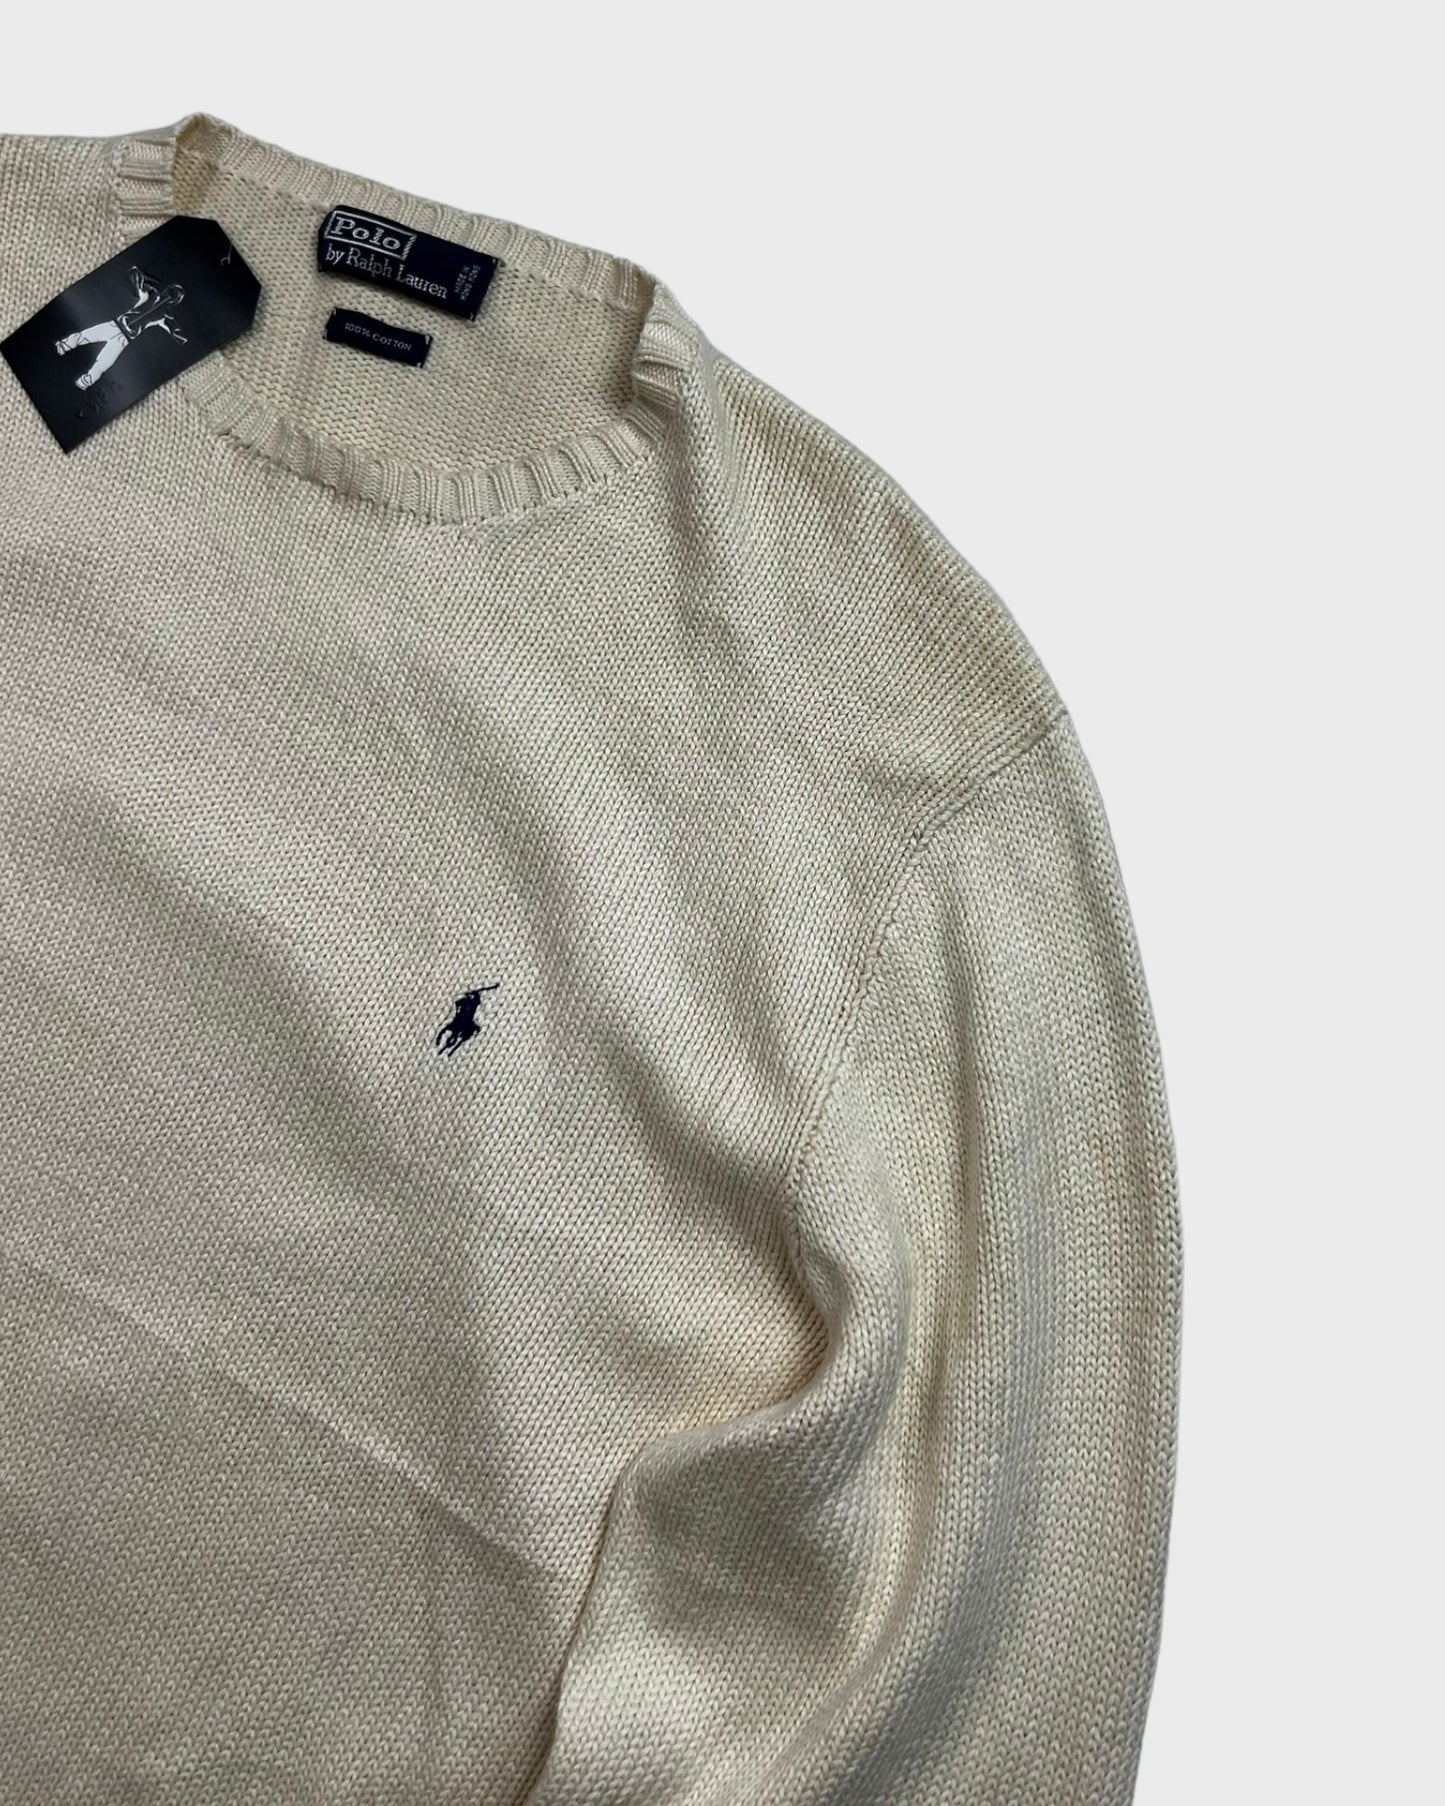 Ralph Lauren knit / sweater (XL)